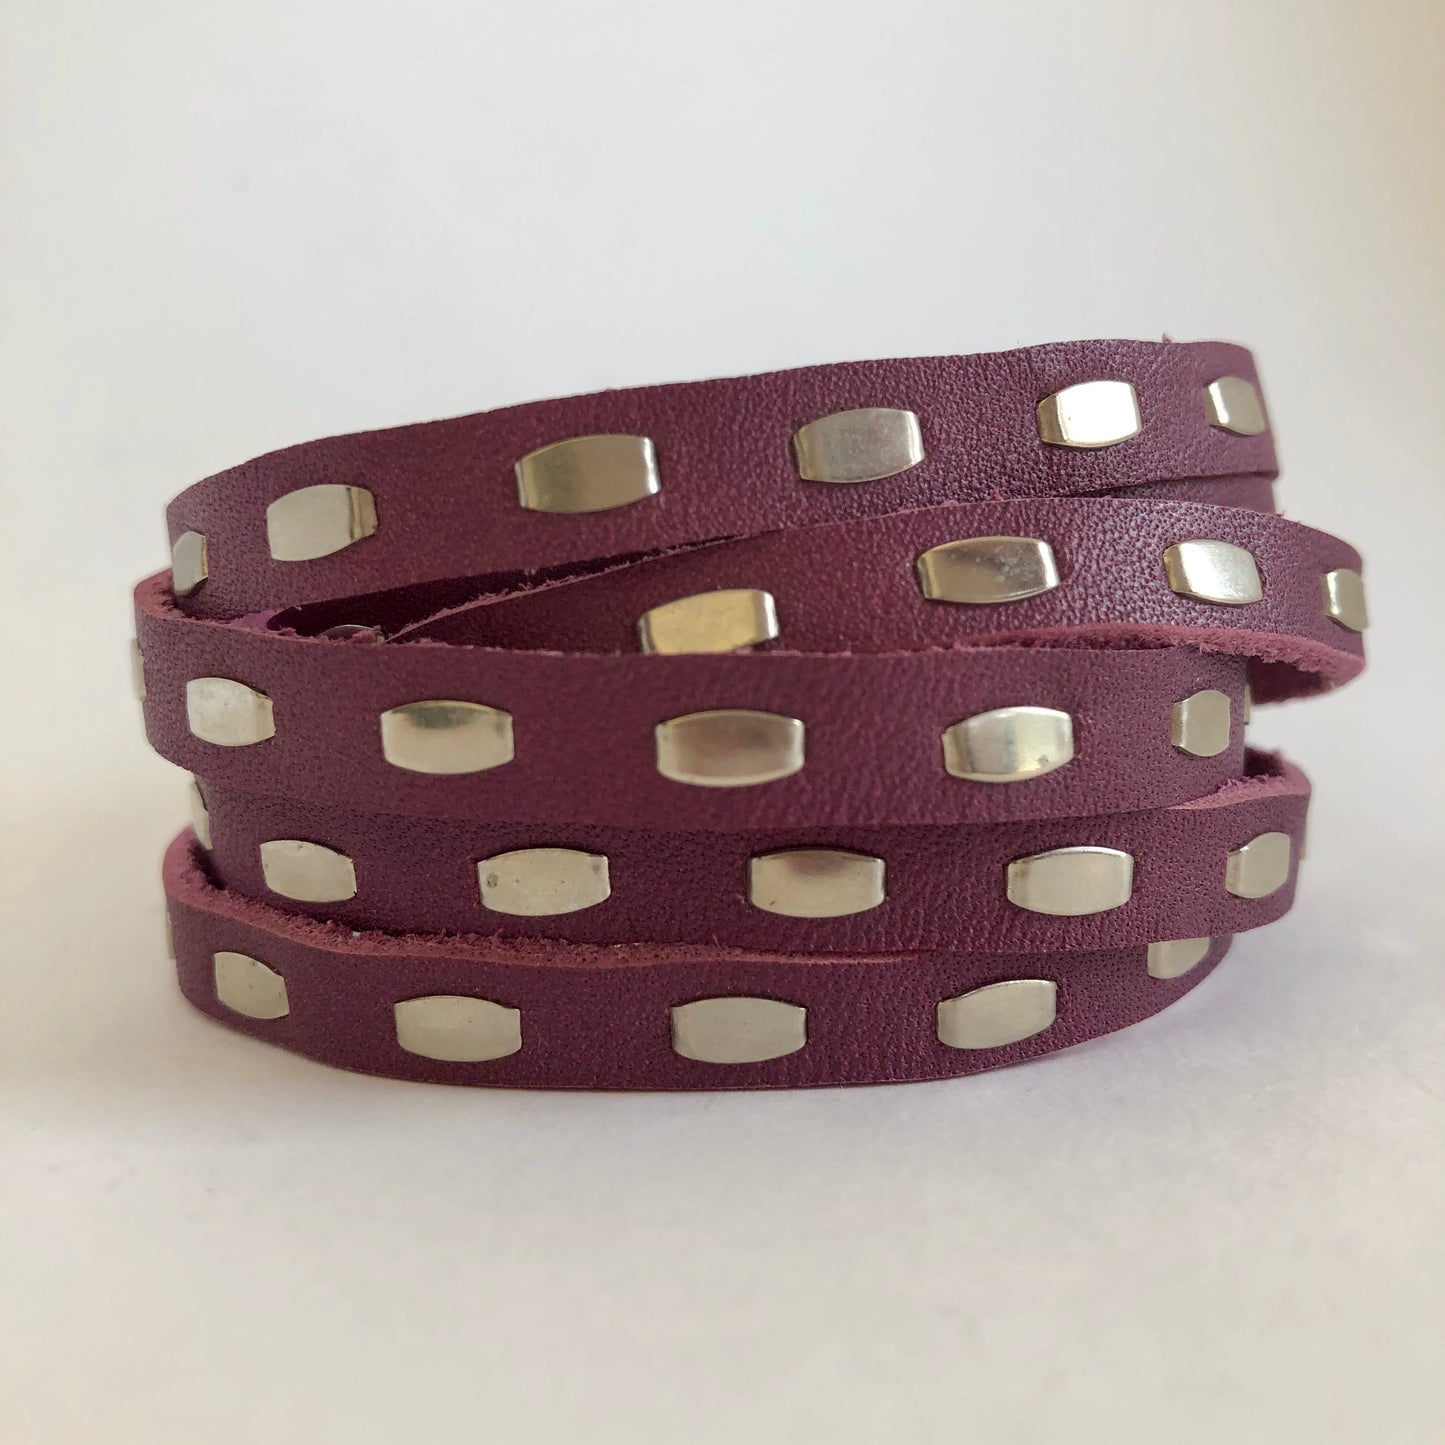 Studded leather wrap bracelet